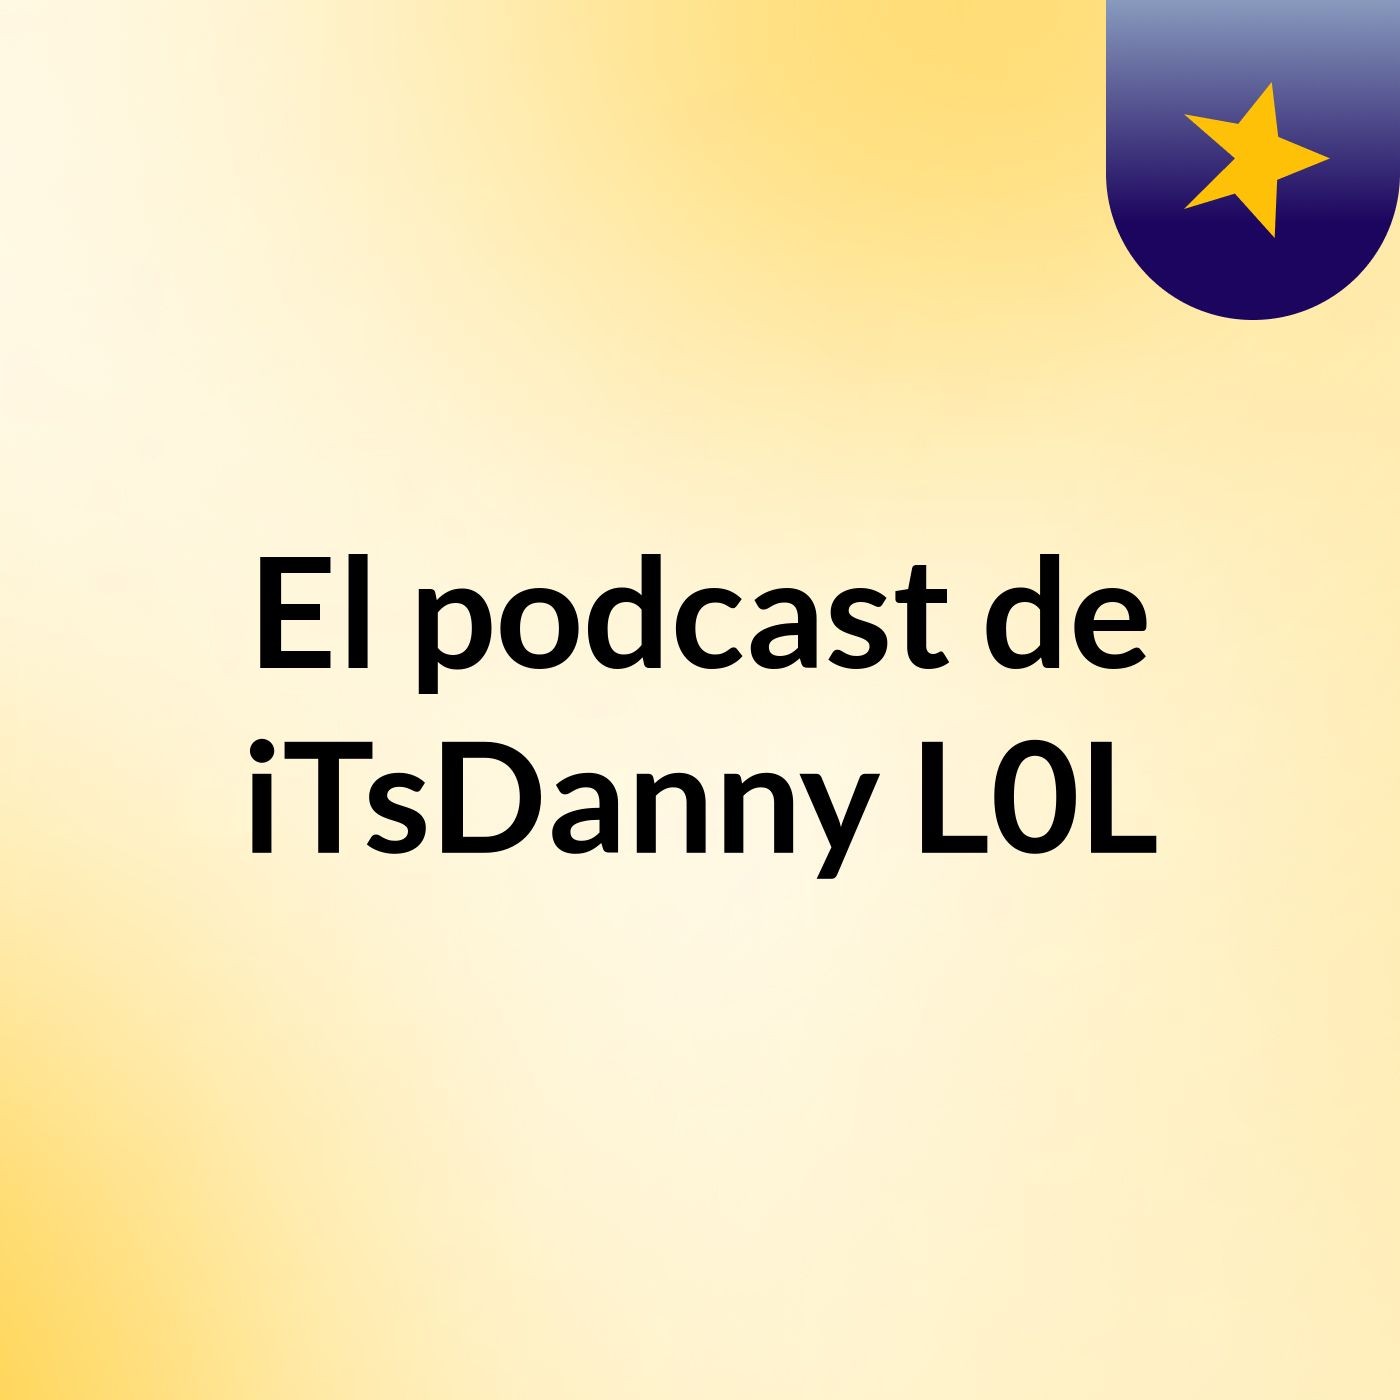 El podcast de iTsDanny L0L